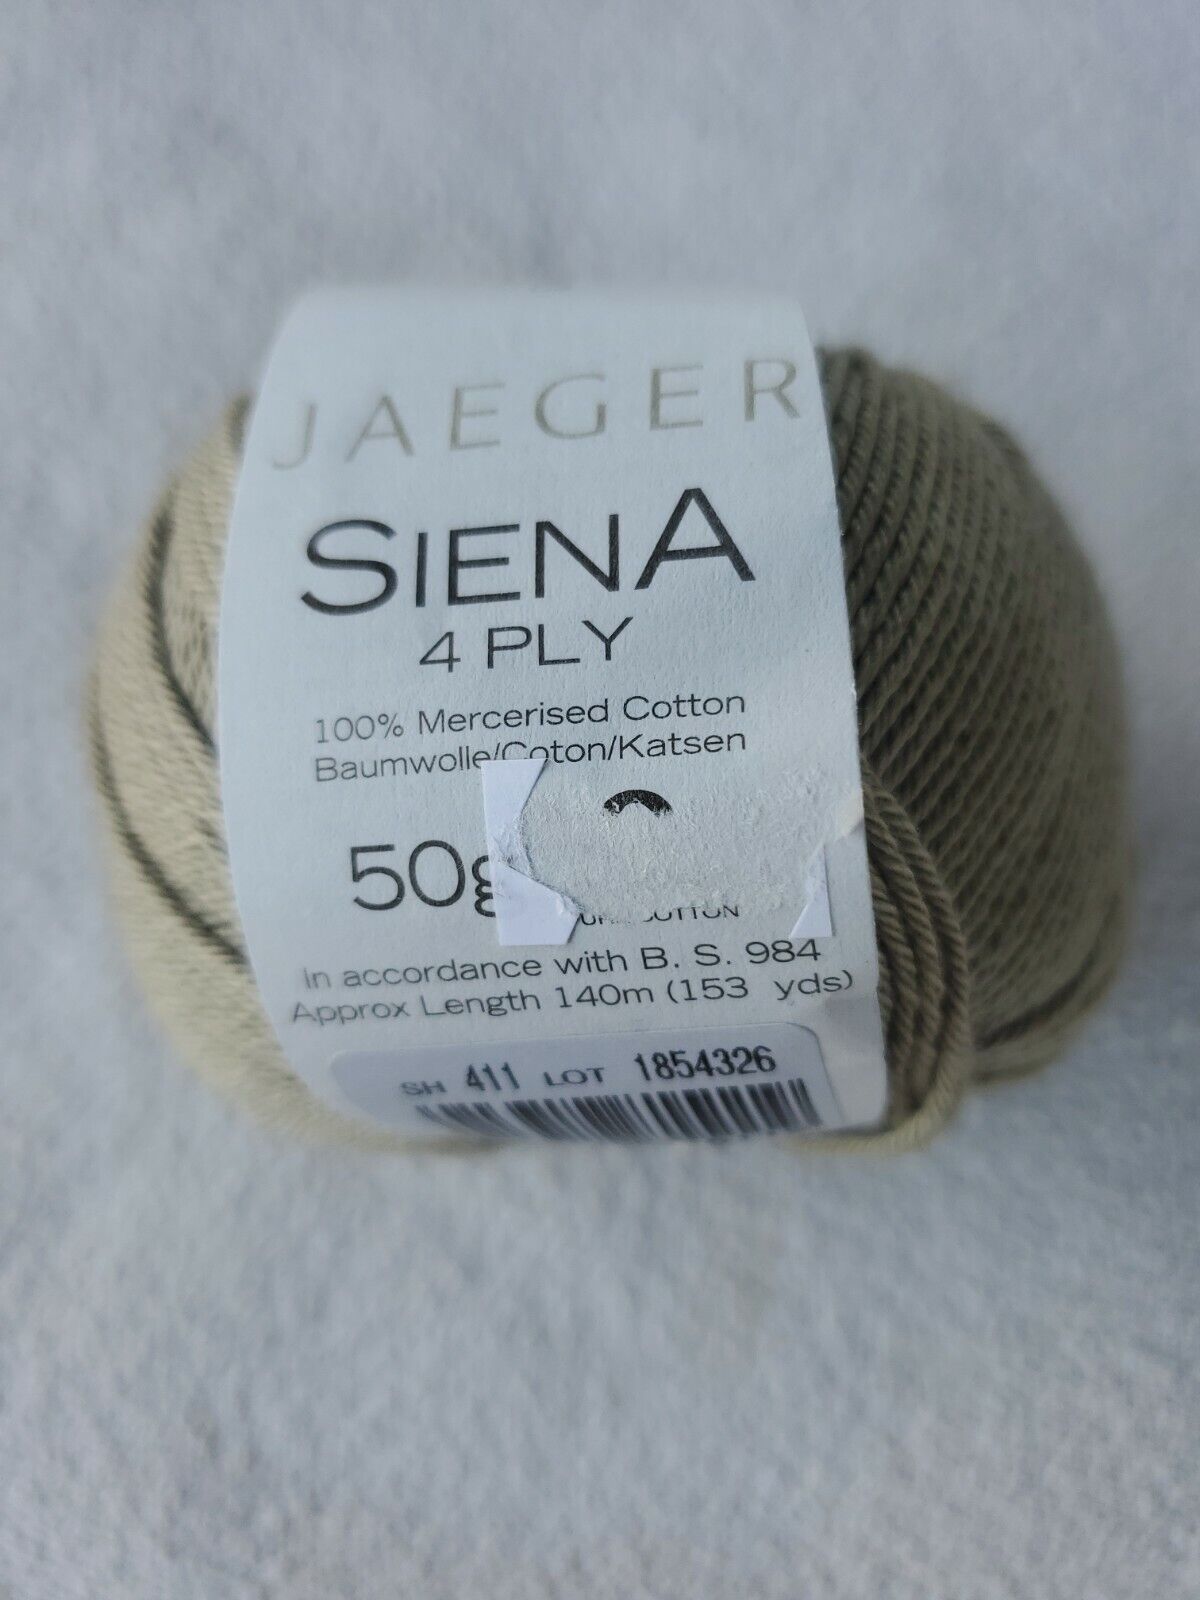 Jaeger Siena 4 Ply Yarn 100% Mercerised Cotton Color 411